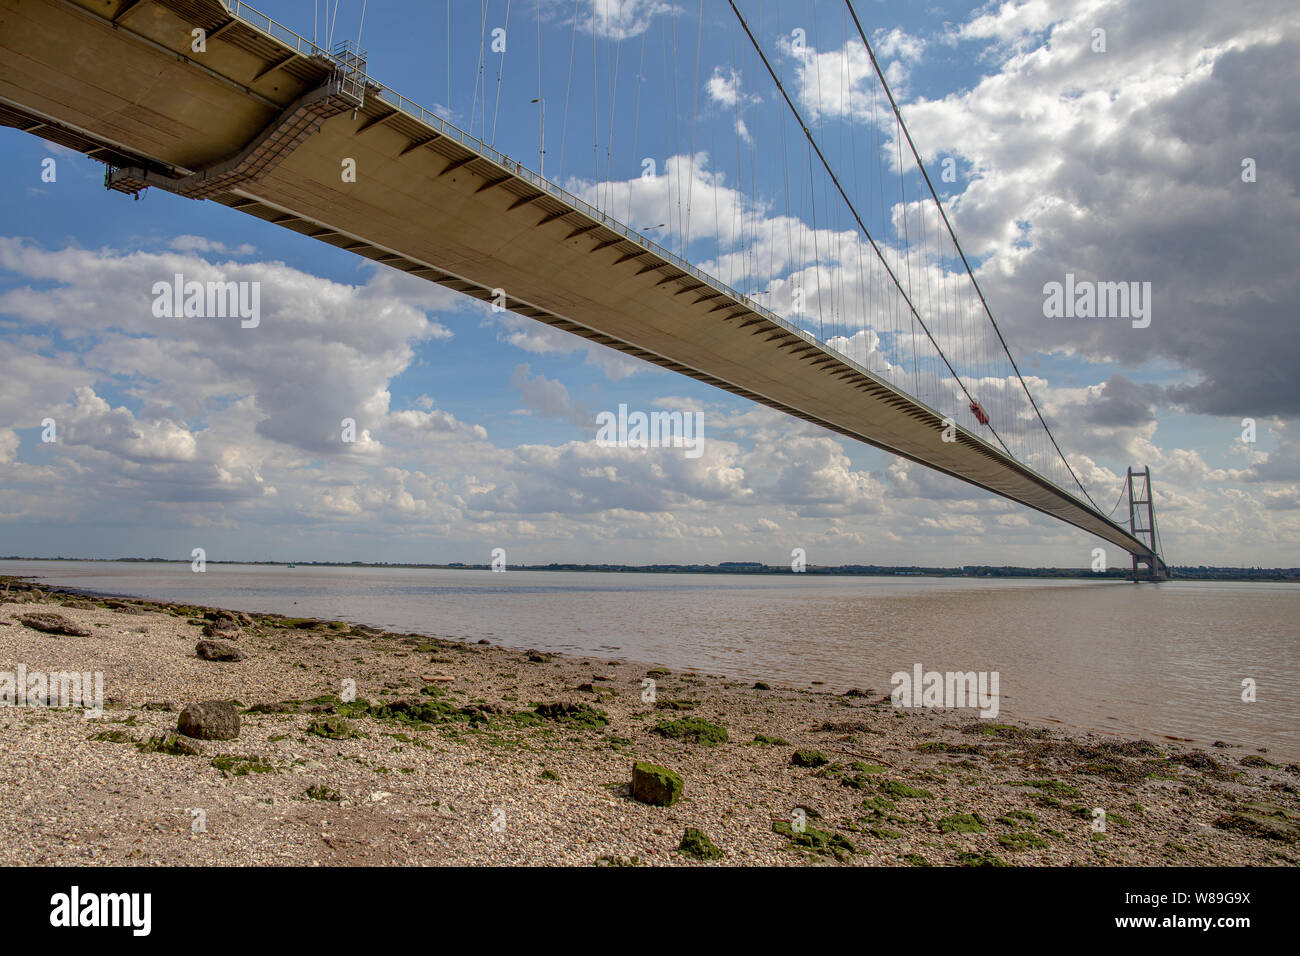 El Puente Humber en Hull, Yorkshire, Reino Unido gran span puente colgante. Foto de stock